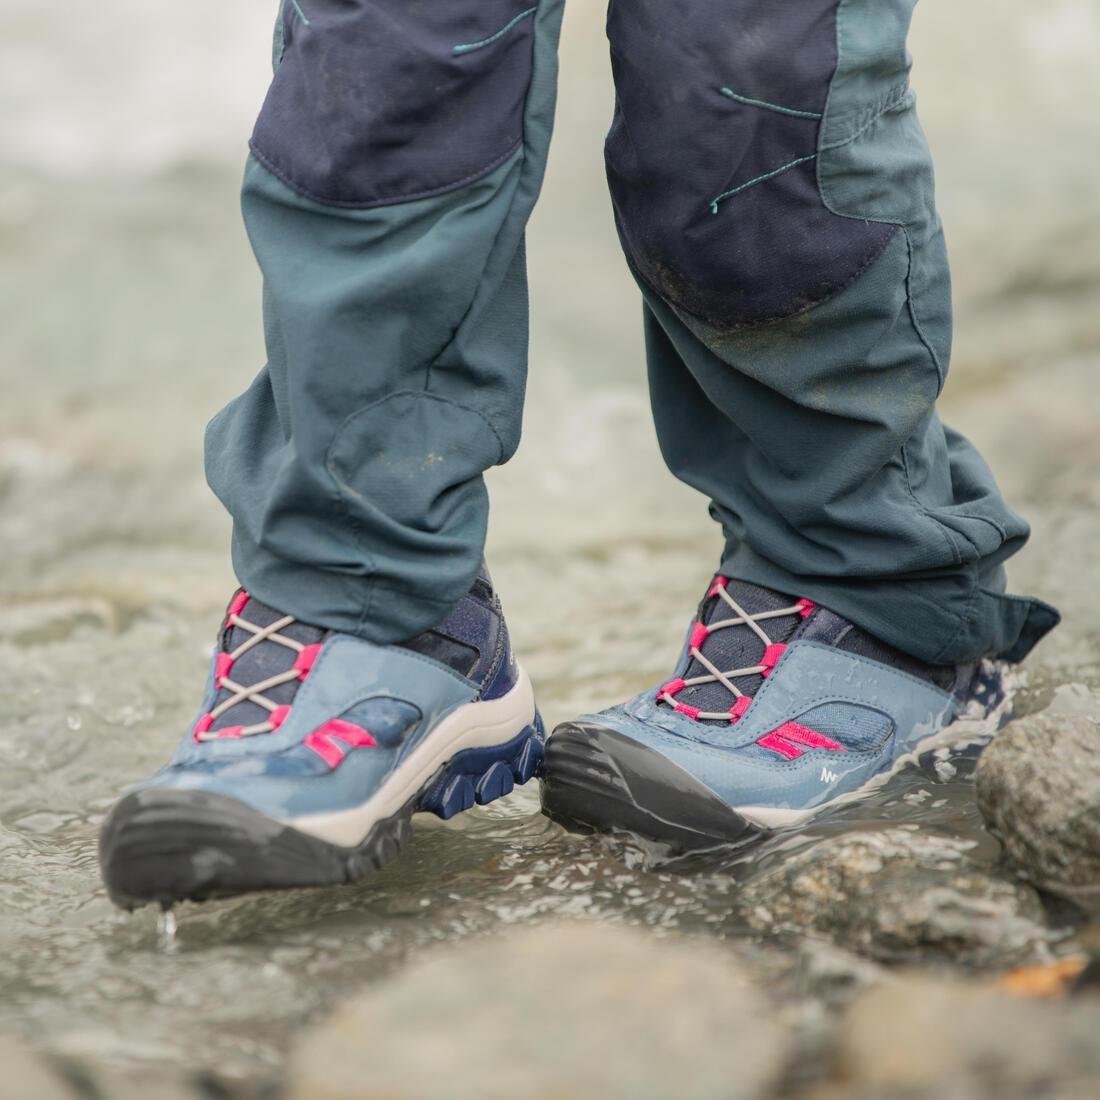 QUECHUA - Kids' Waterproof Boots - Junior Size 10 - Grey, storm blue